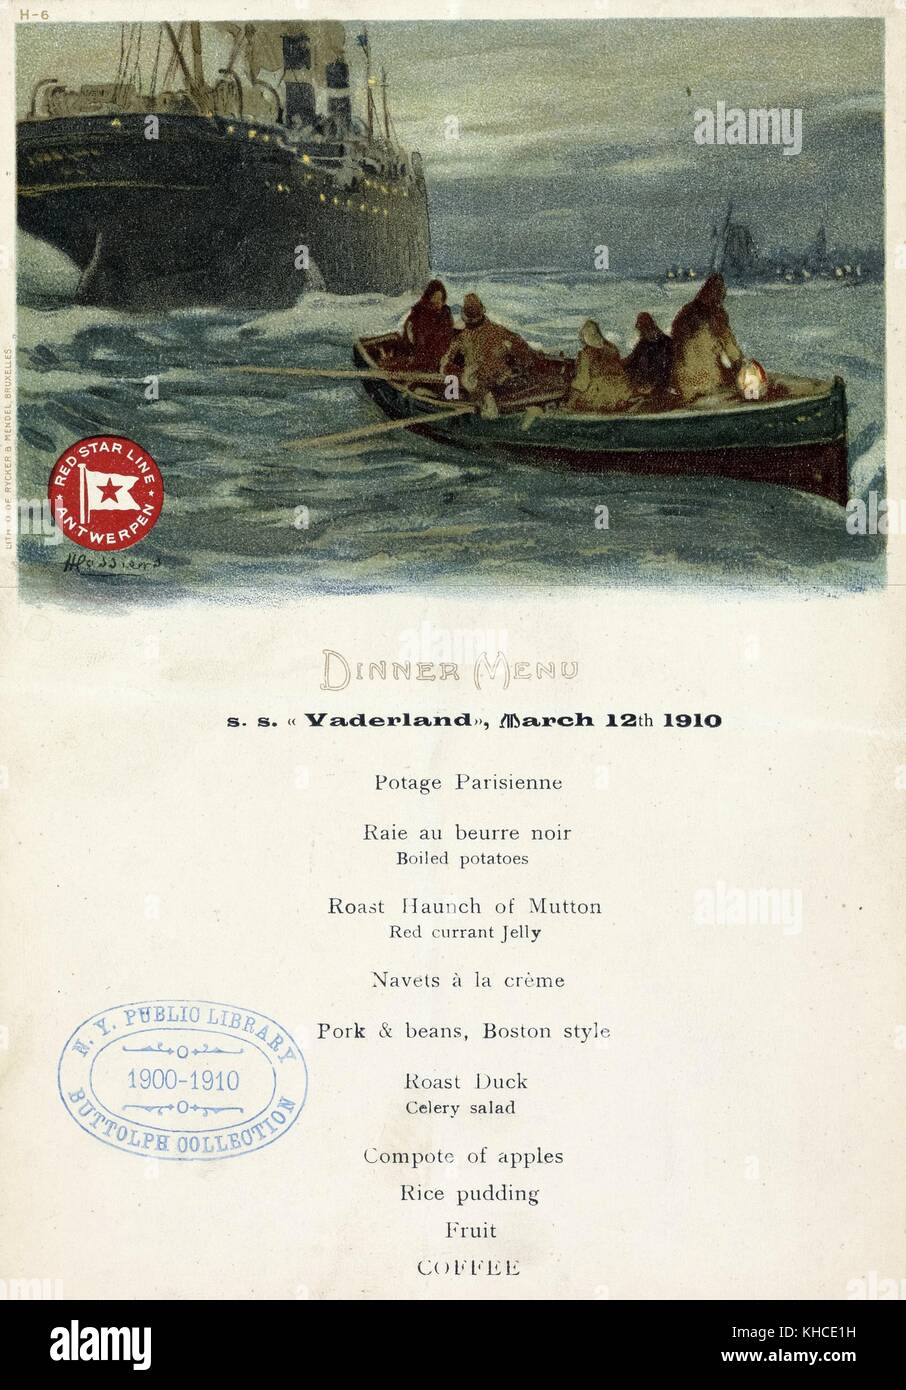 Menu di una cena detenute da red star line antwerpen a bordo s s vaderland, con illustrazione delle persone su una barca a remi in barca verso una camicia di vapore, 12 marzo 1910. dalla biblioteca pubblica di new york. Foto Stock